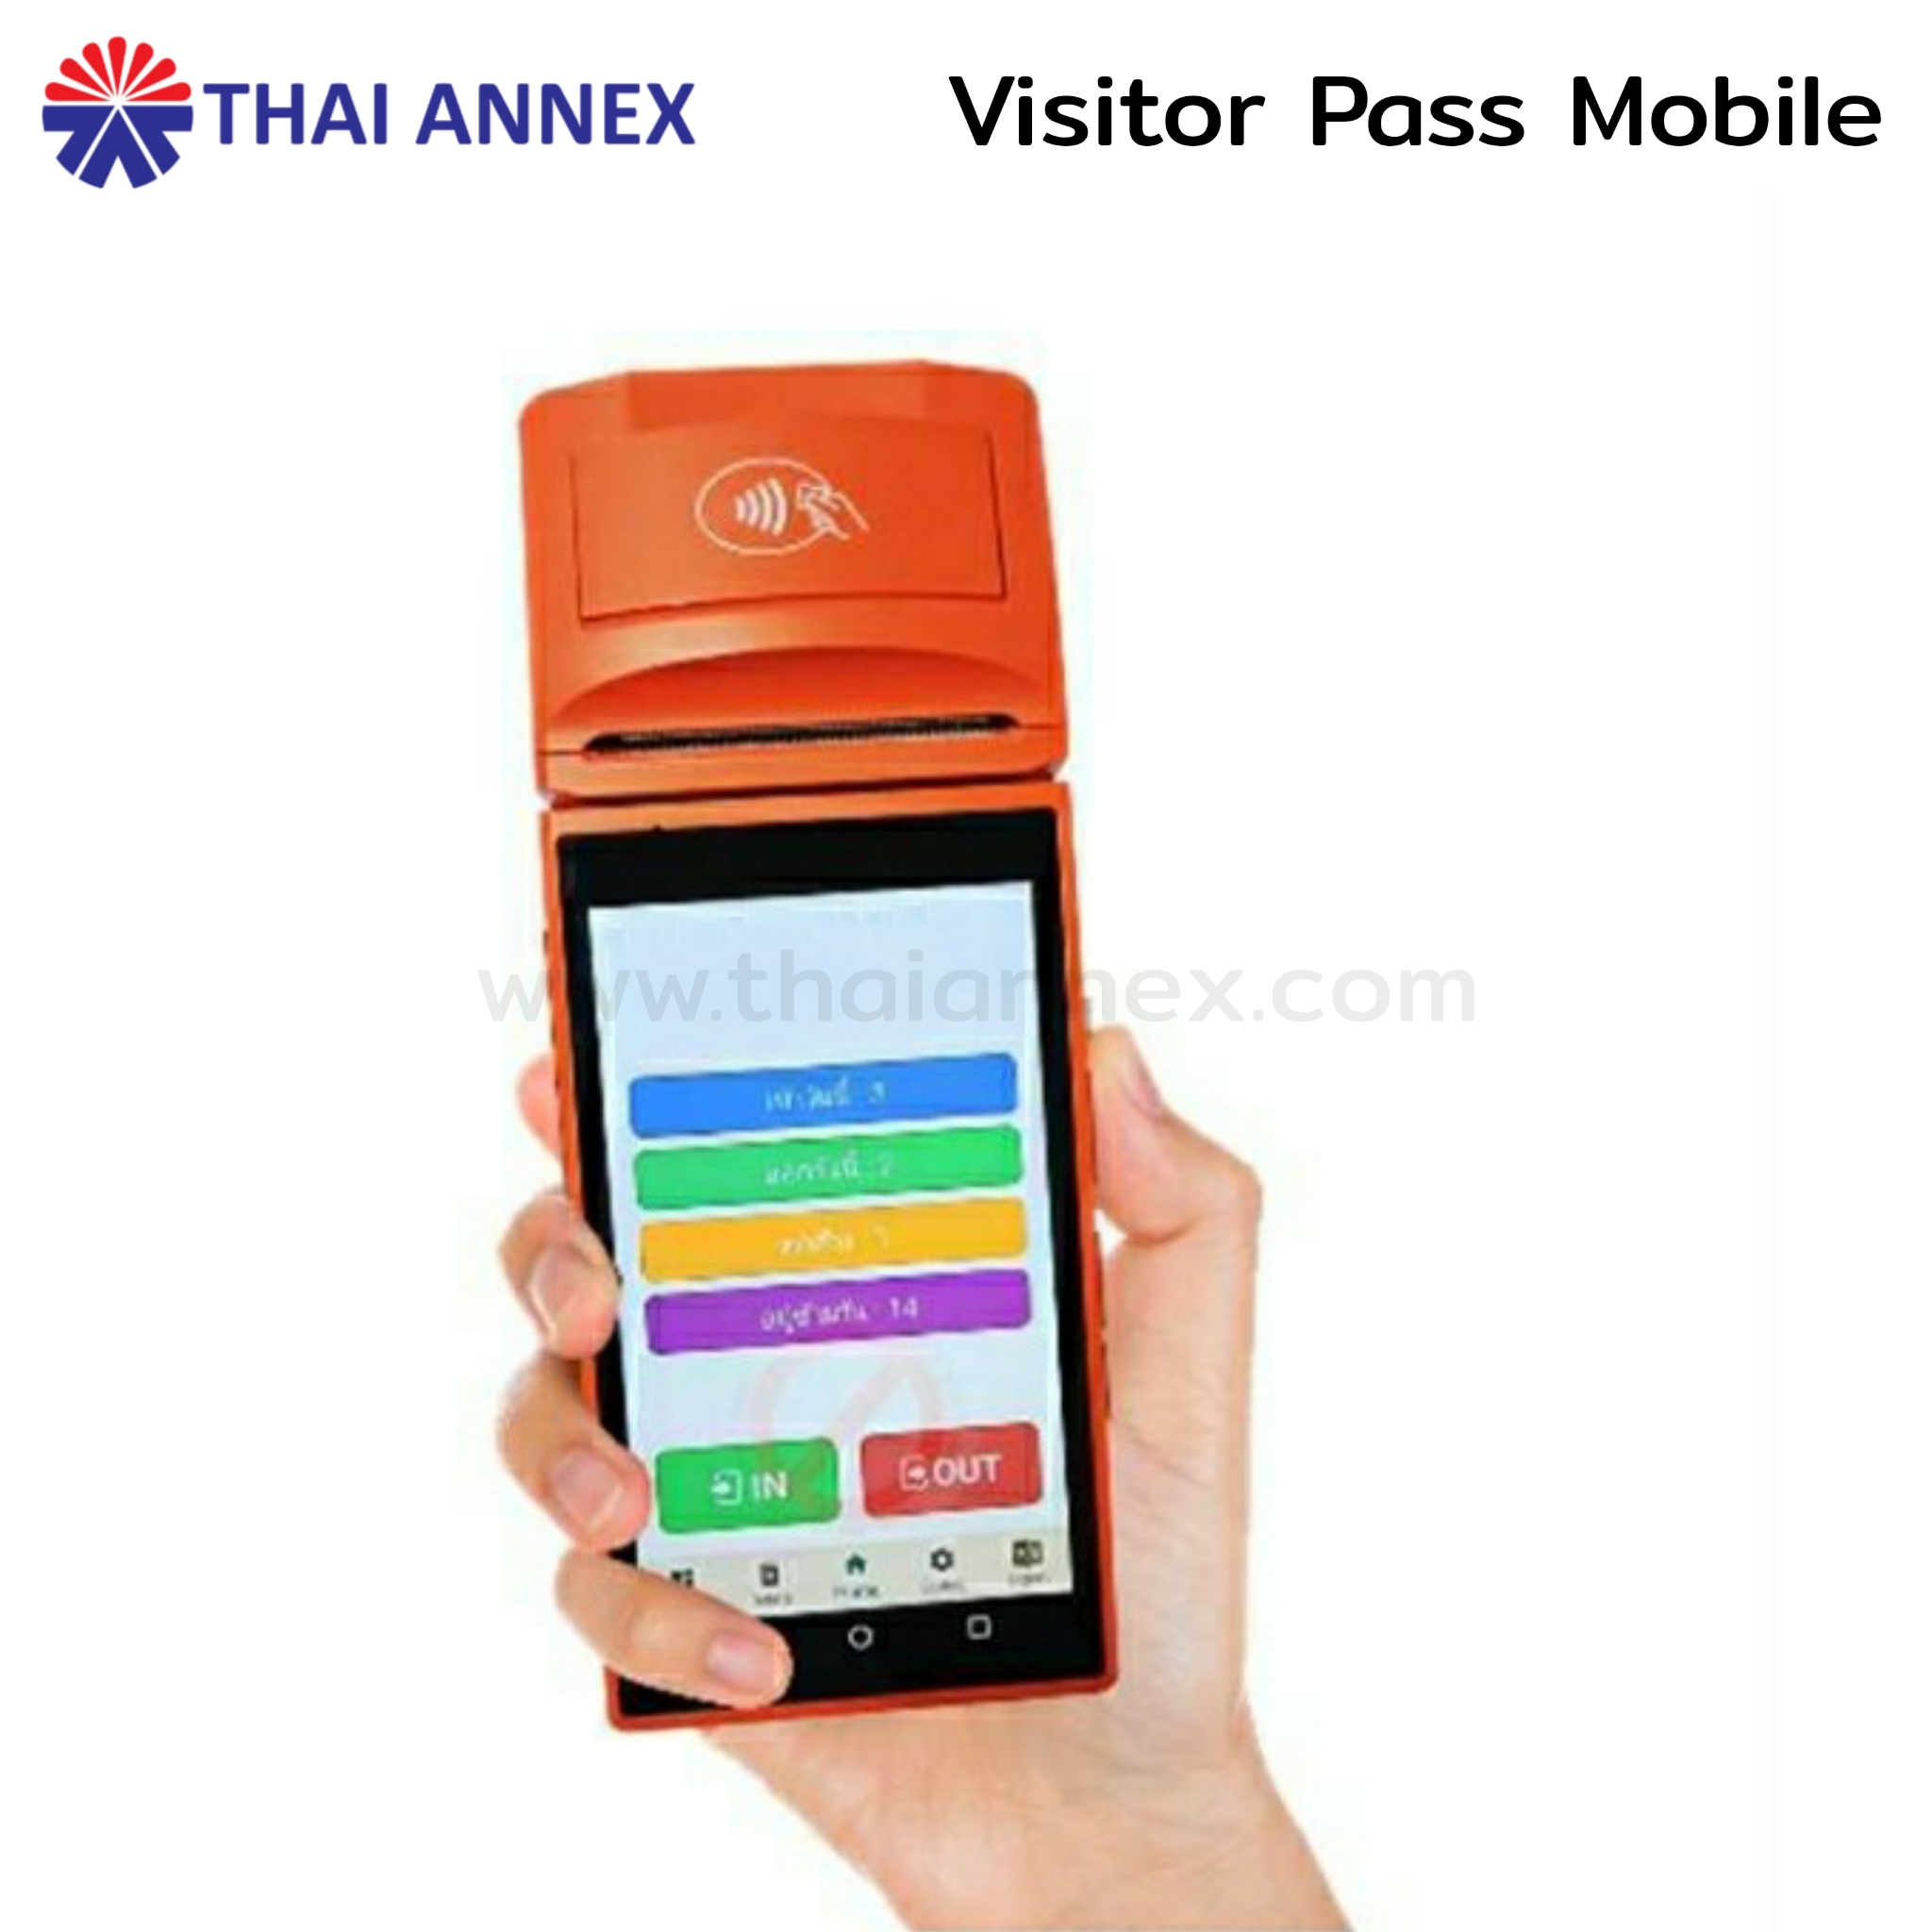 ระบบแลกบัตรผู้มาติดต่อ แบบพกพา (Visitor Pass Mobile)